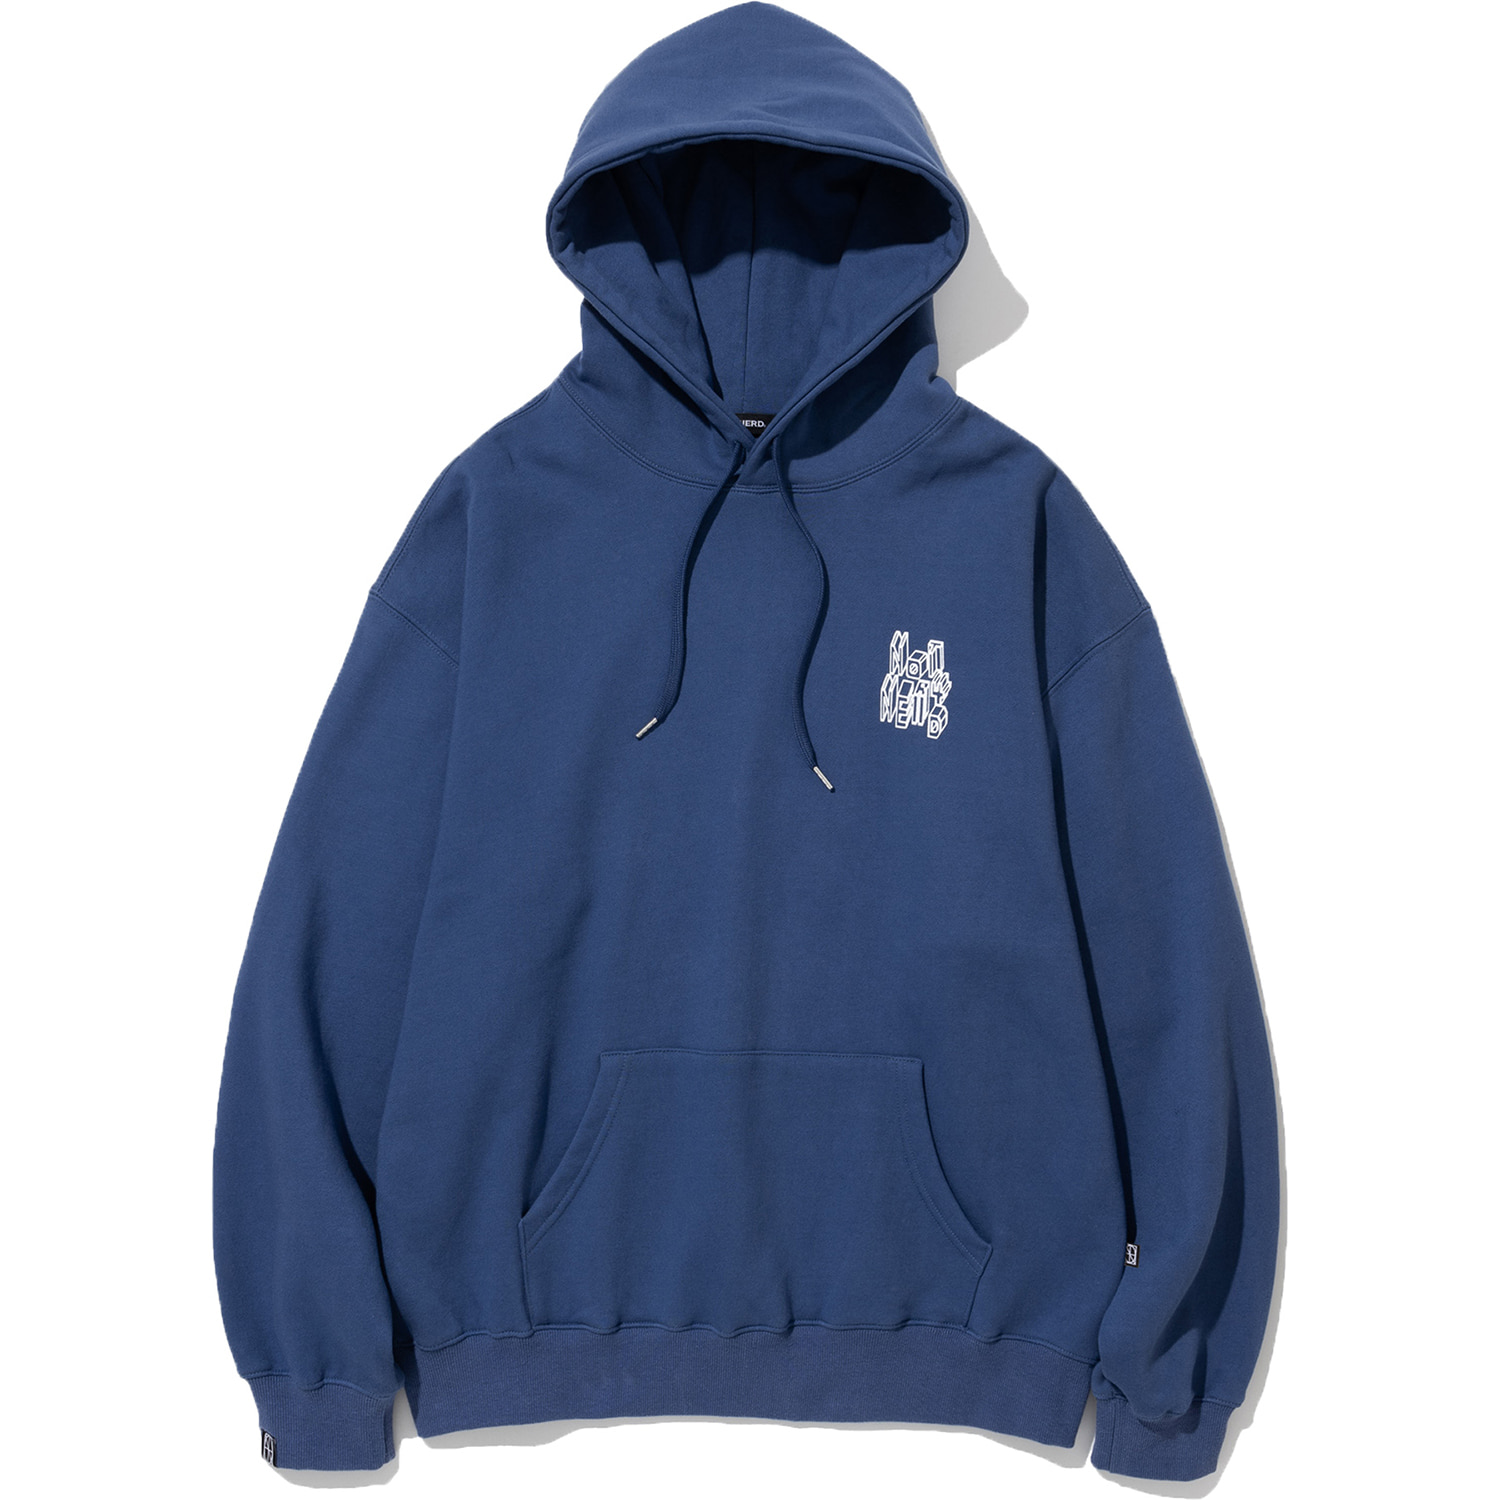 3D Line Logo Pullover Hood - Indigo Blue,NOT4NERD